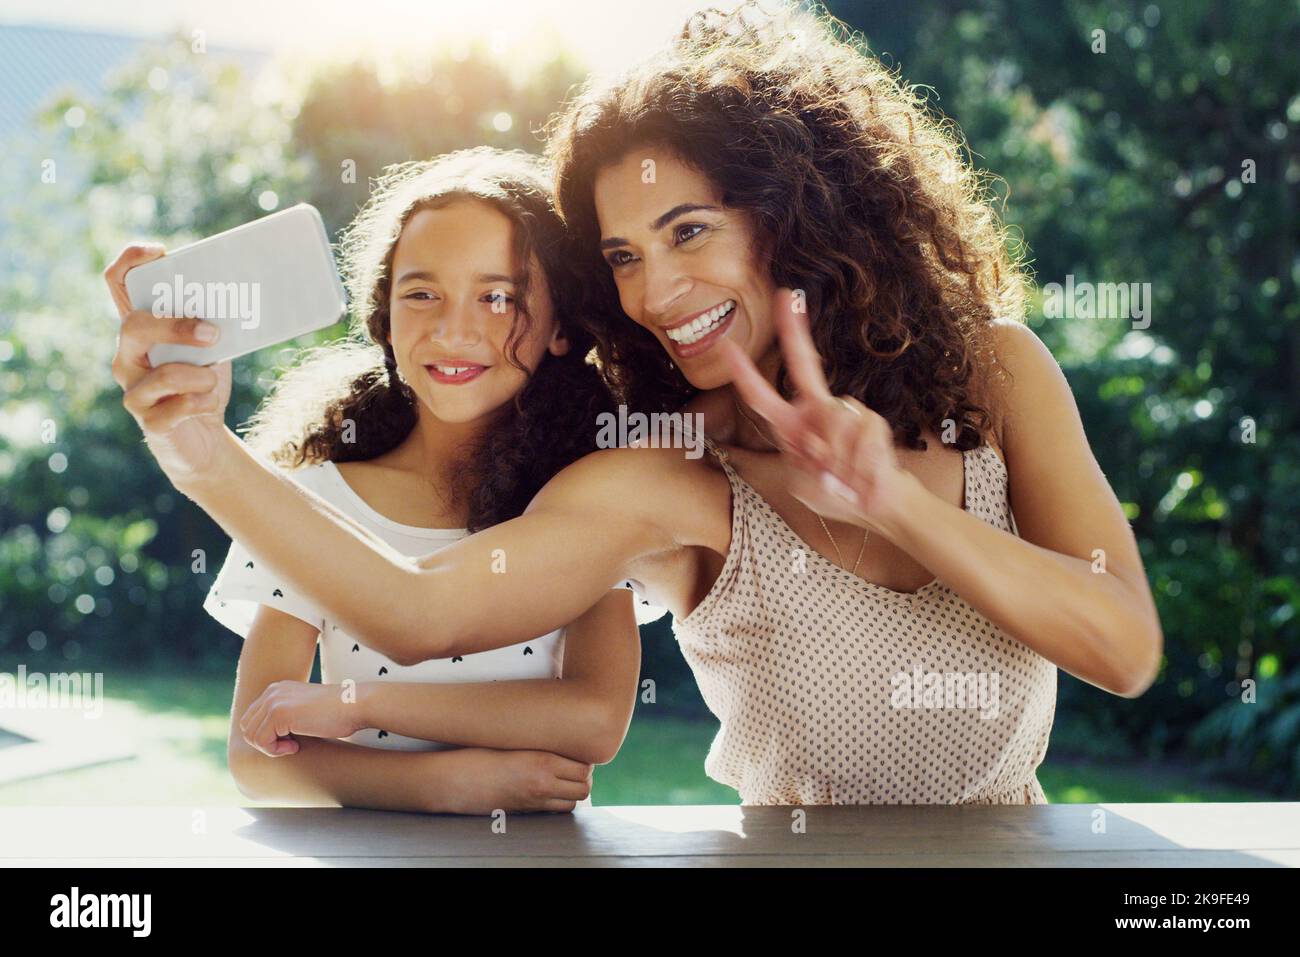 Mettiti in posa: Una giovane madre e sua figlia prendono selfie insieme al parco durante il giorno. Foto Stock